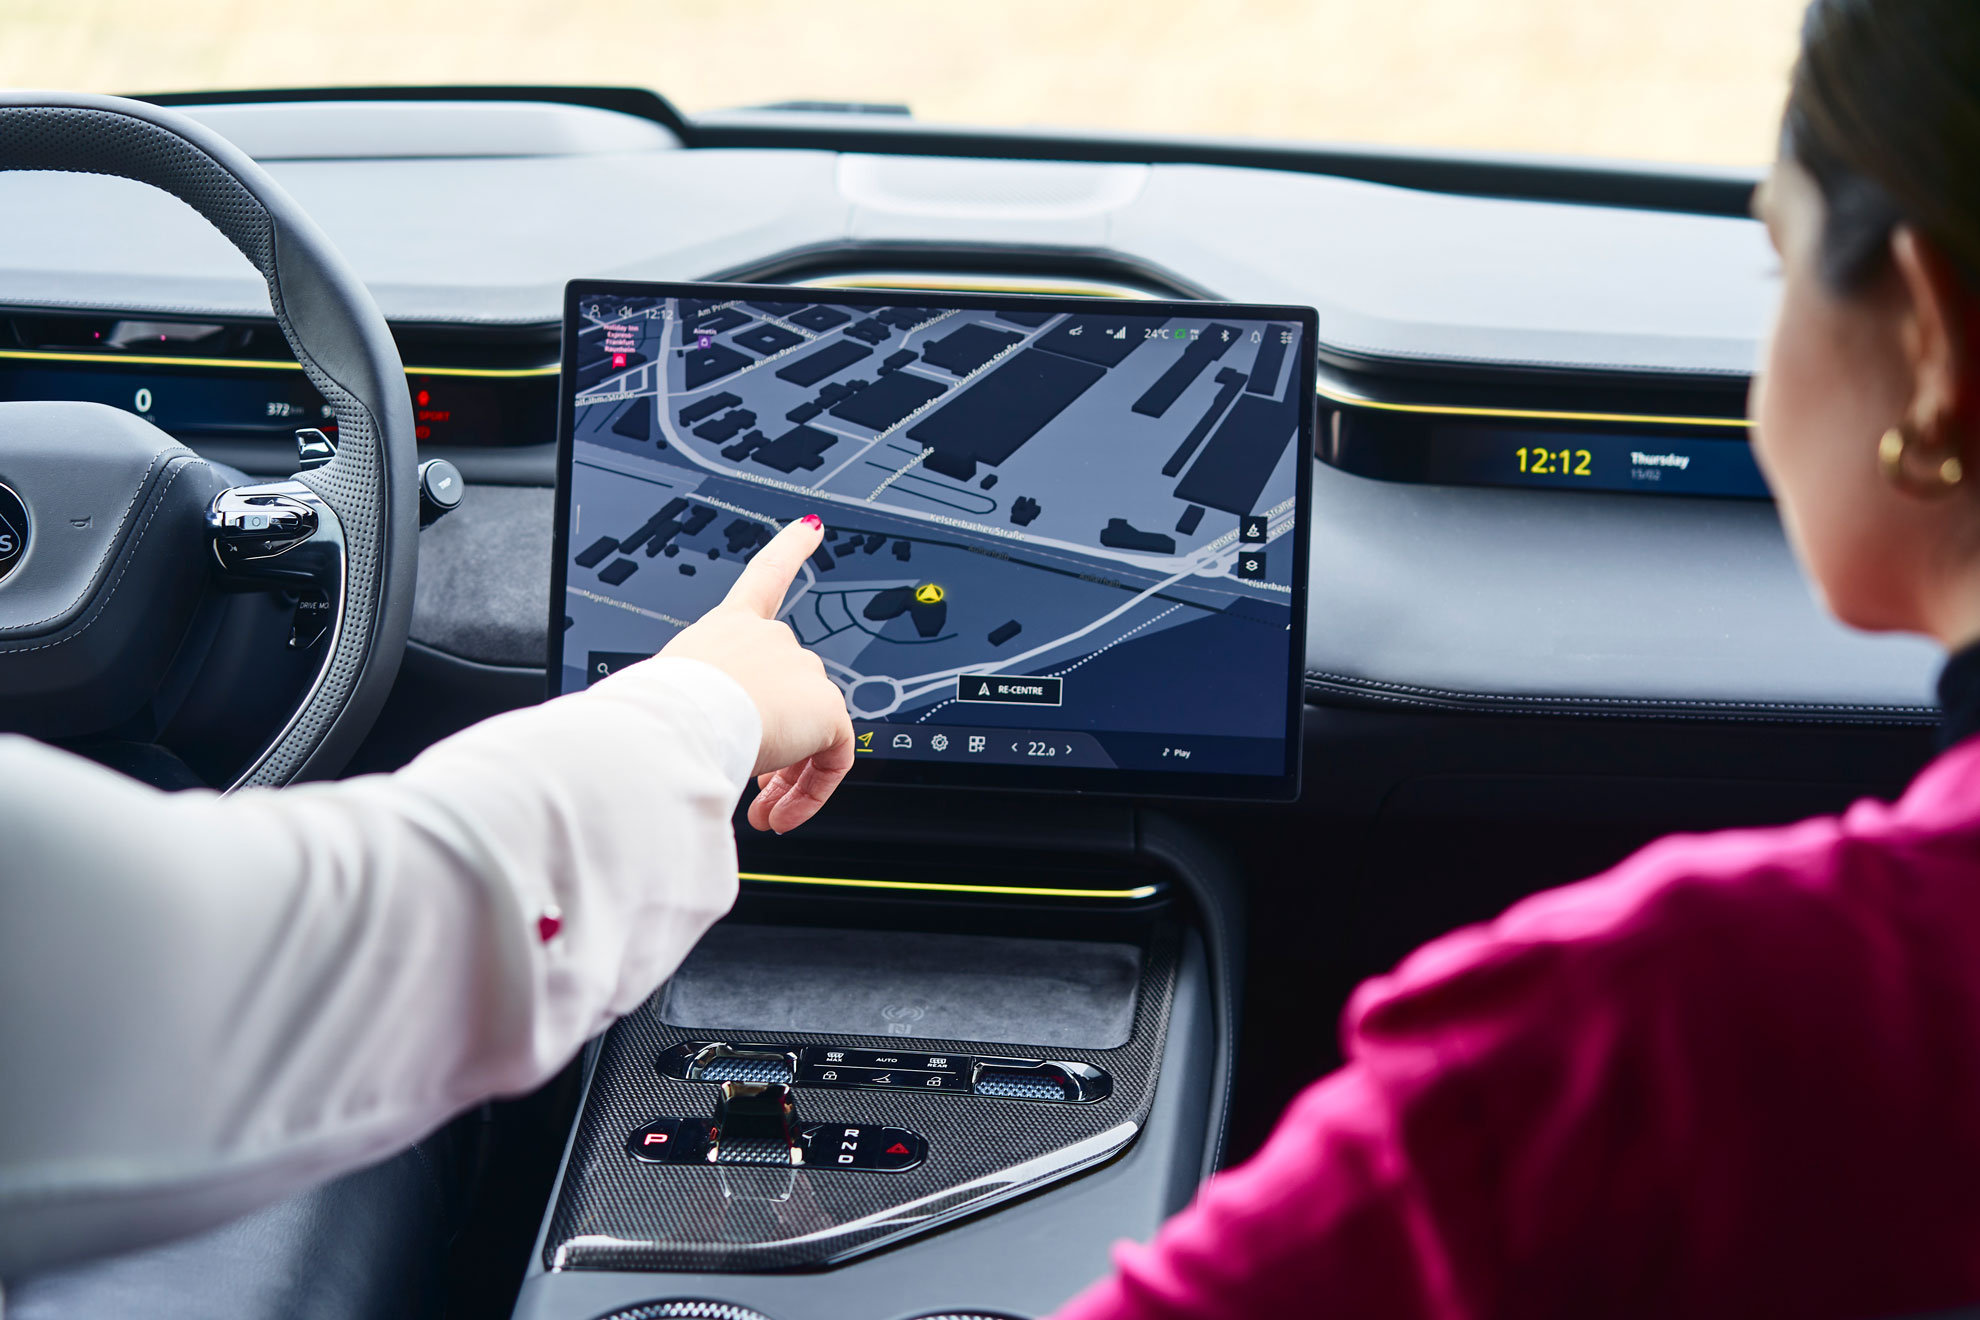 Bildschirm innerhalb eines Fahrzeugs auf dem ein Navigationsprogramm zu sehen ist. Man sieht, wie die Fahrerin des Autos darauf zeigt. Die Beifahrerin ist ebenfalls von hinten im Anschnitt zu sehen und blickt auf den Monitor.